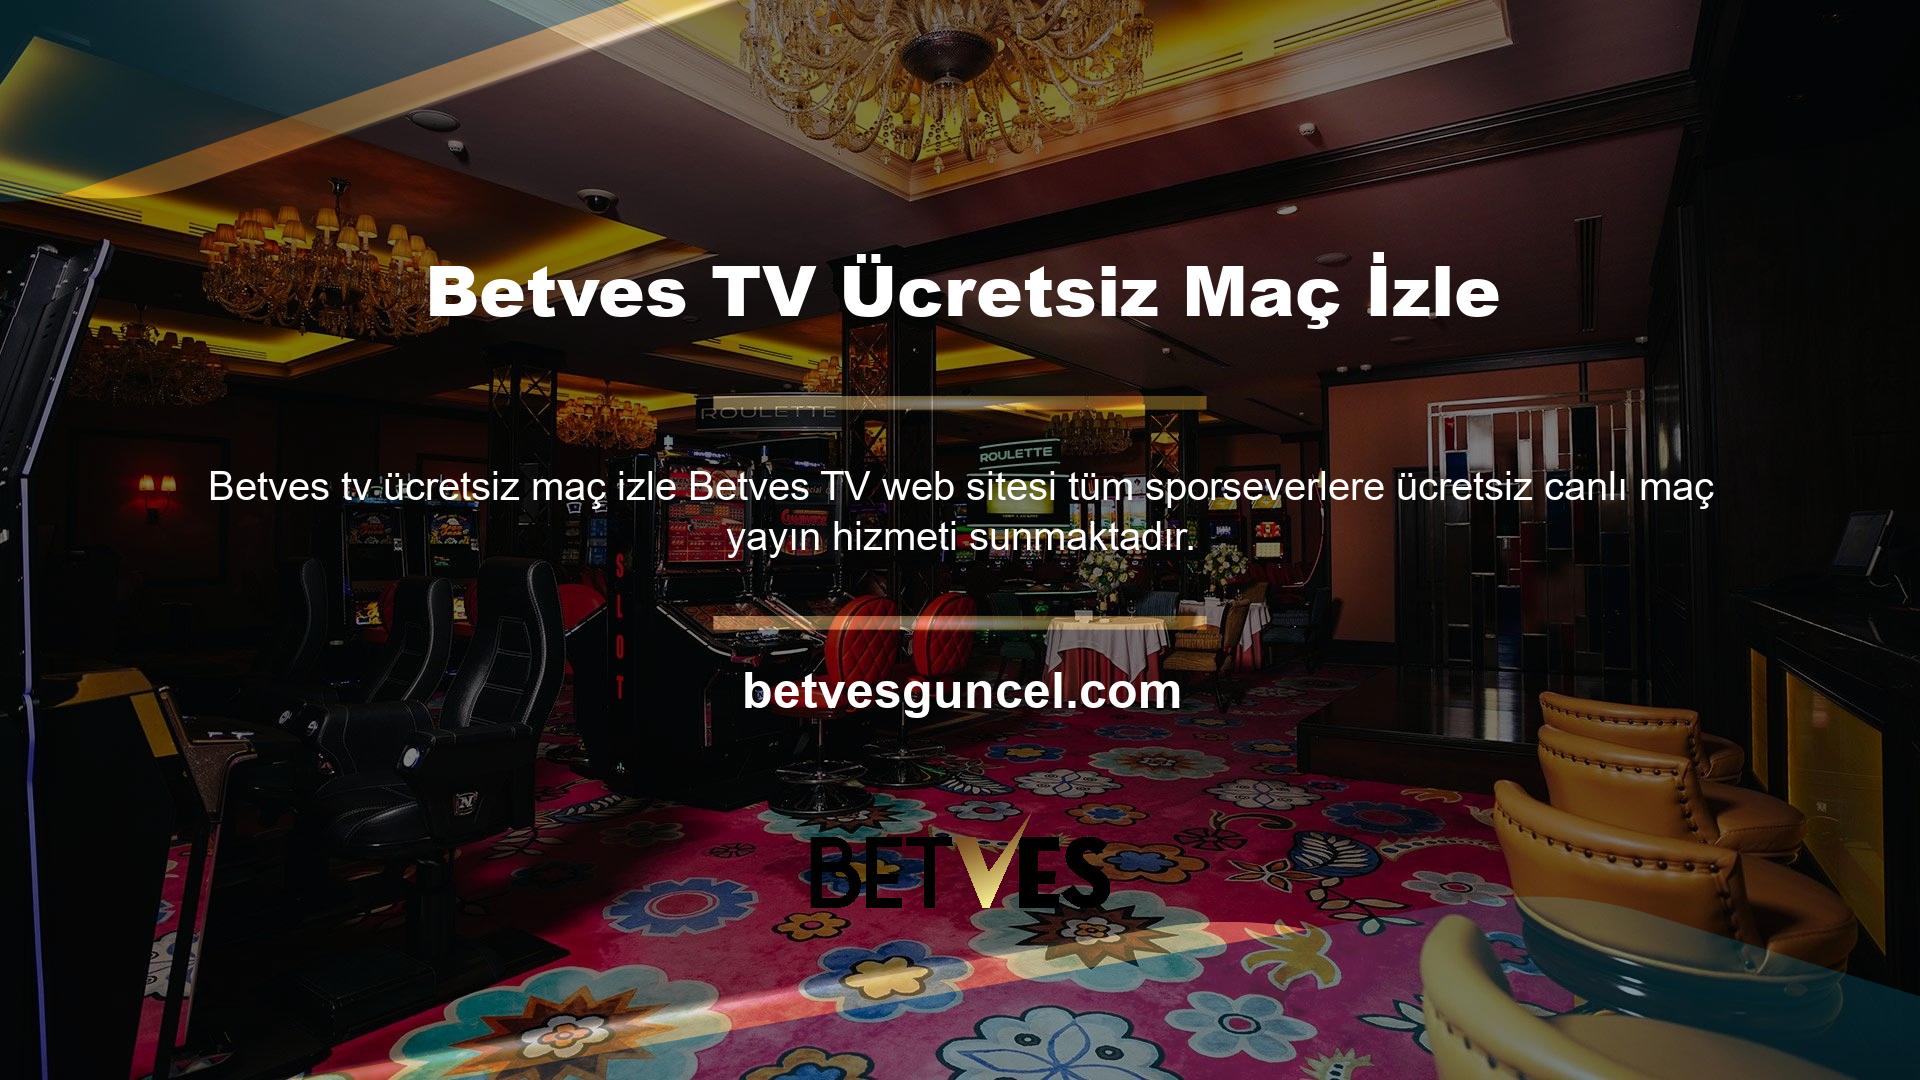 Betves TV canlı maç izleme sitesi, ana sayfasında yer alan tüm hizmet seçeneklerini kullanıcılara sunmaktadır